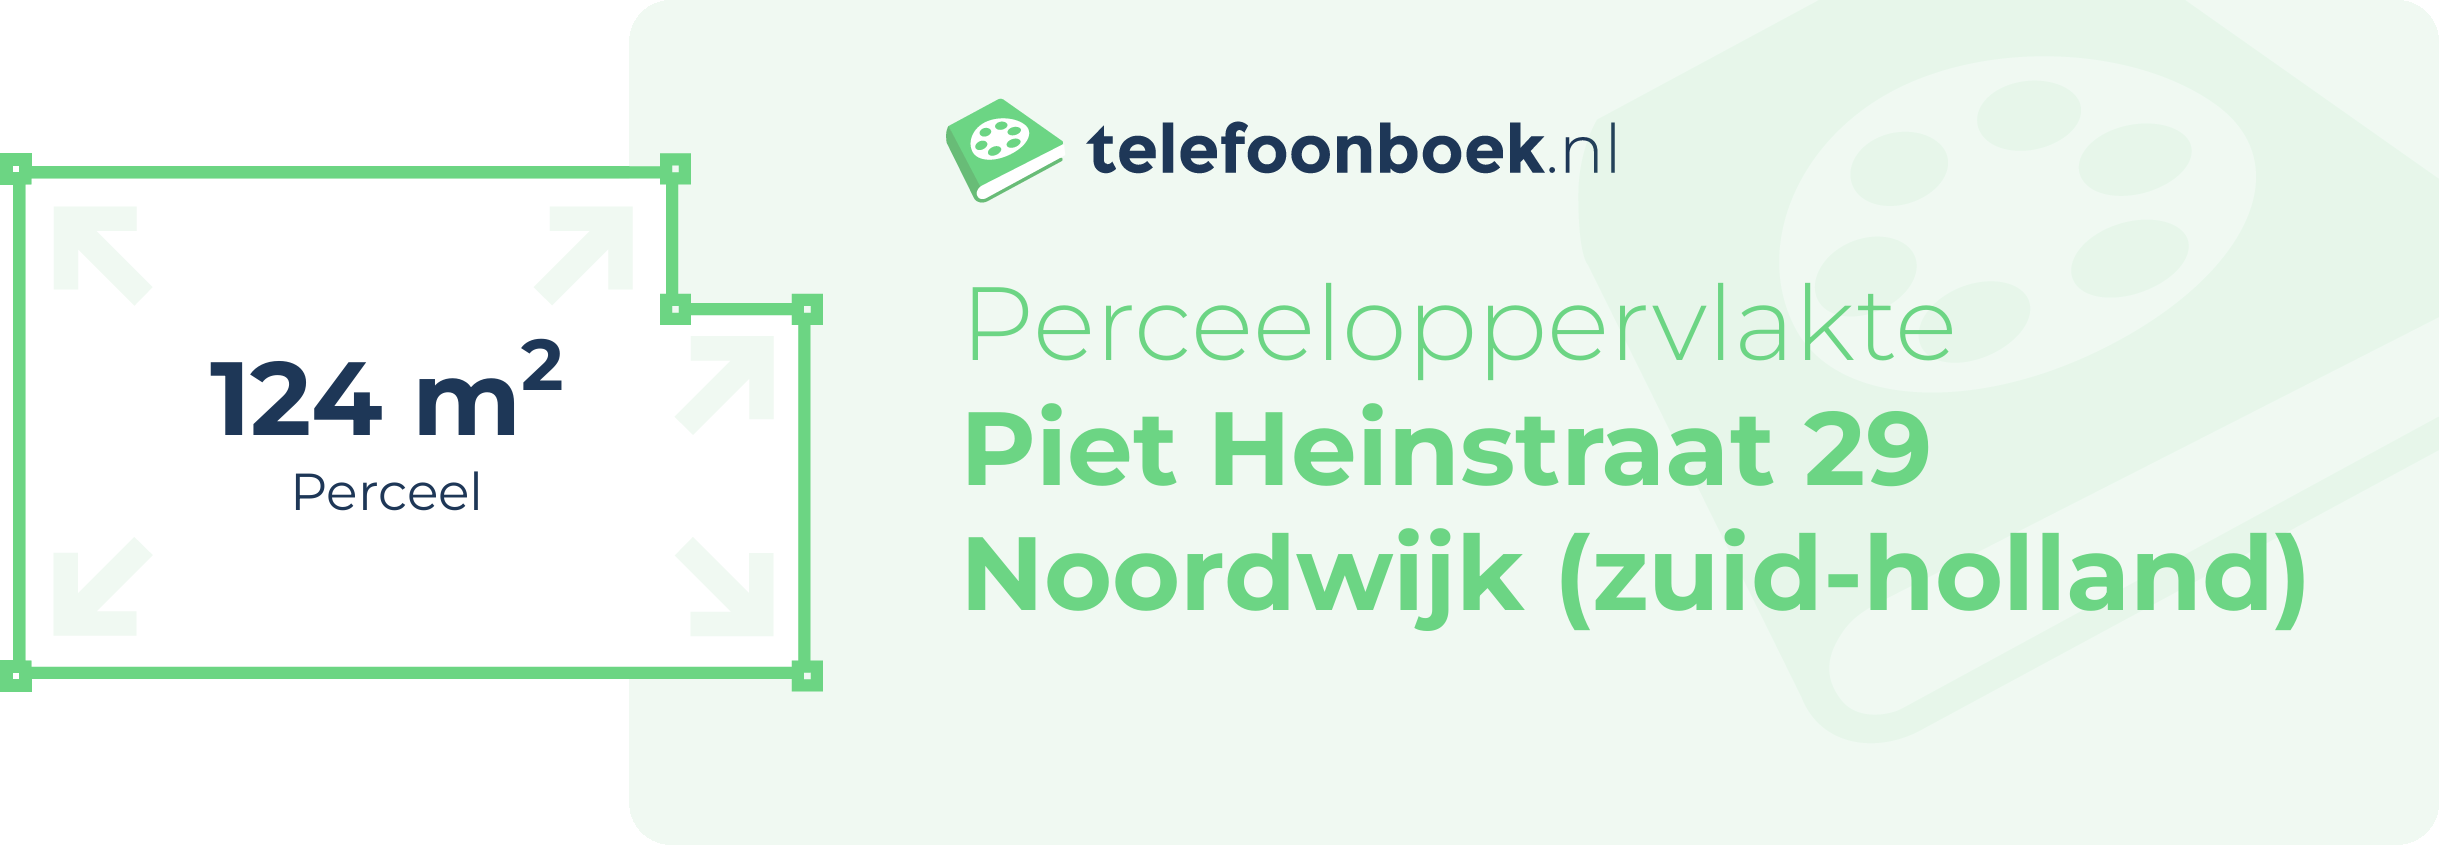 Perceeloppervlakte Piet Heinstraat 29 Noordwijk (Zuid-Holland)